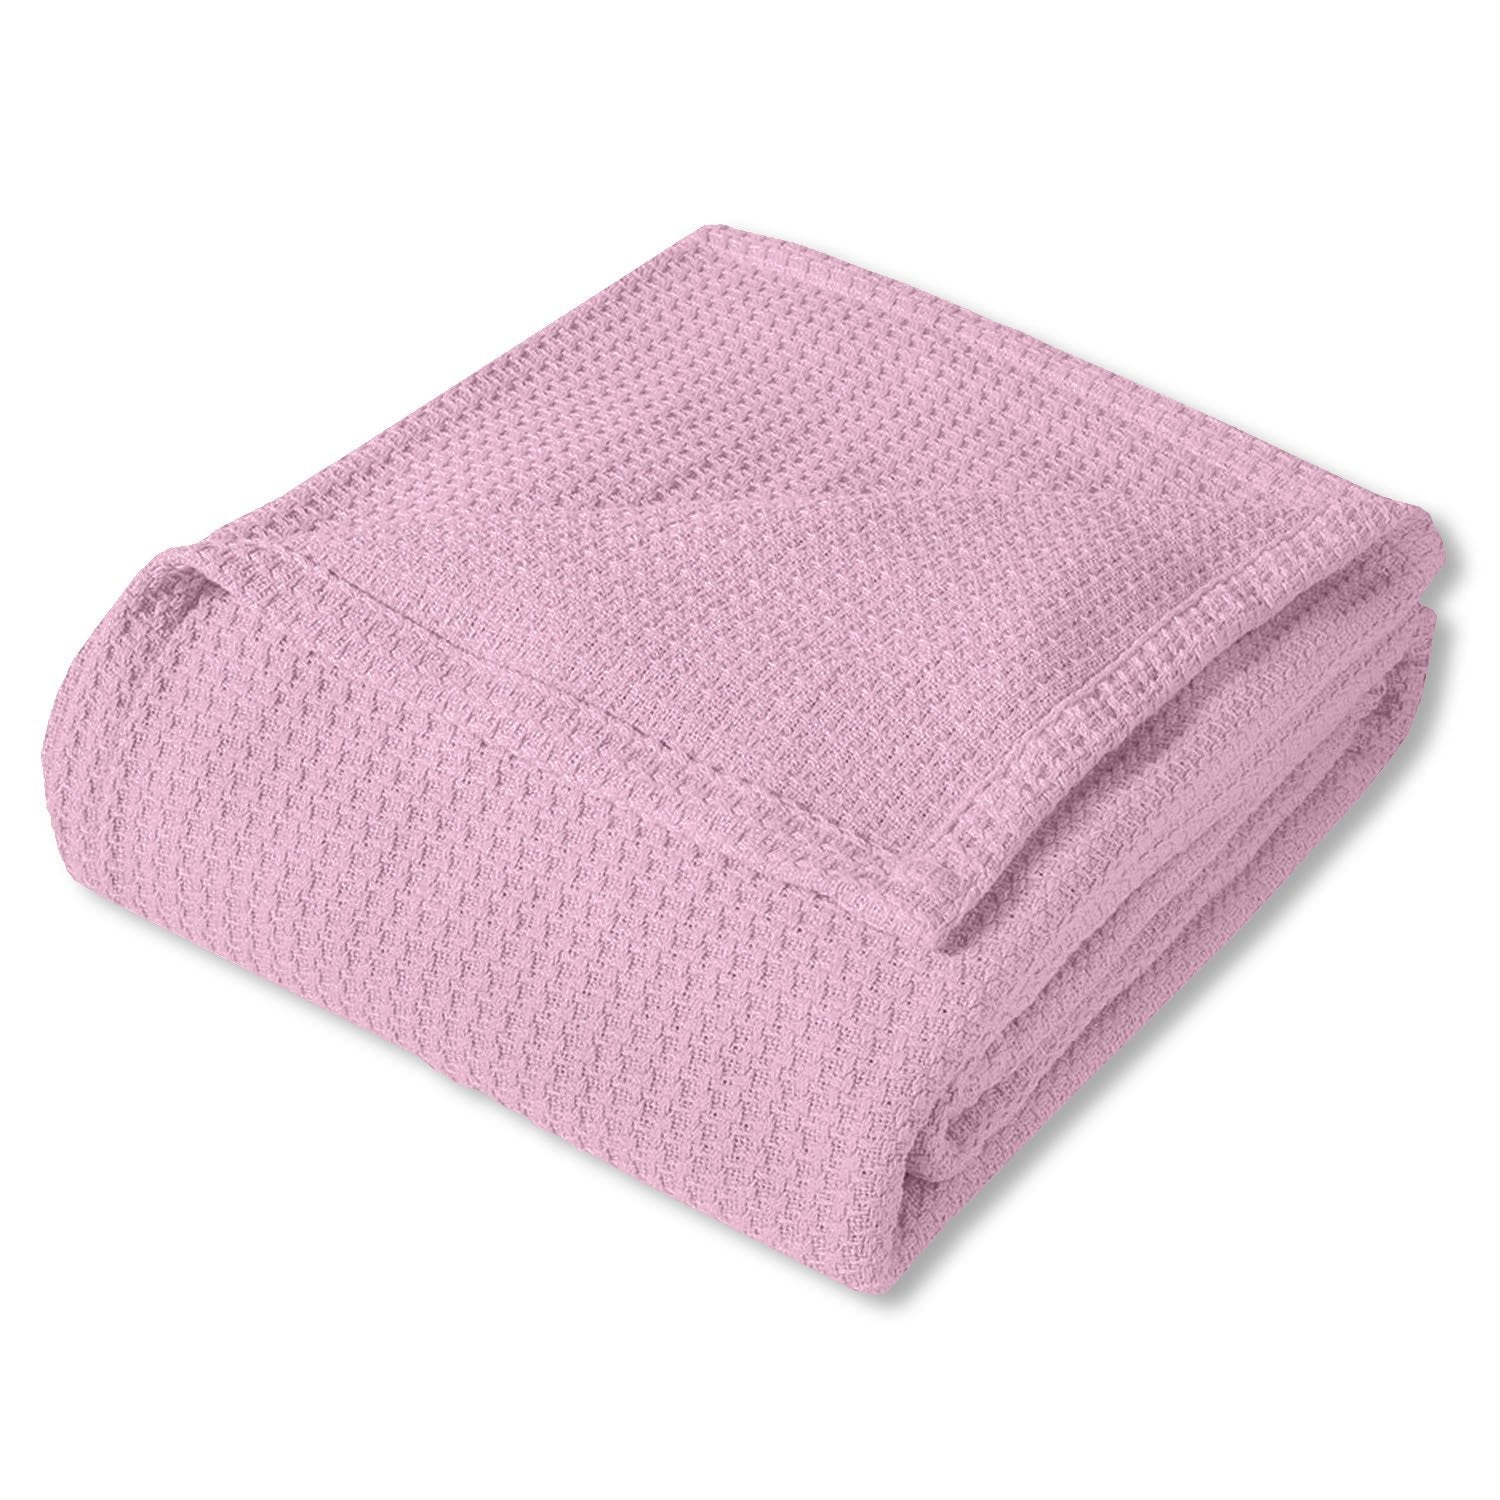 Basket Weave Cotton Blanket Pink - Folded